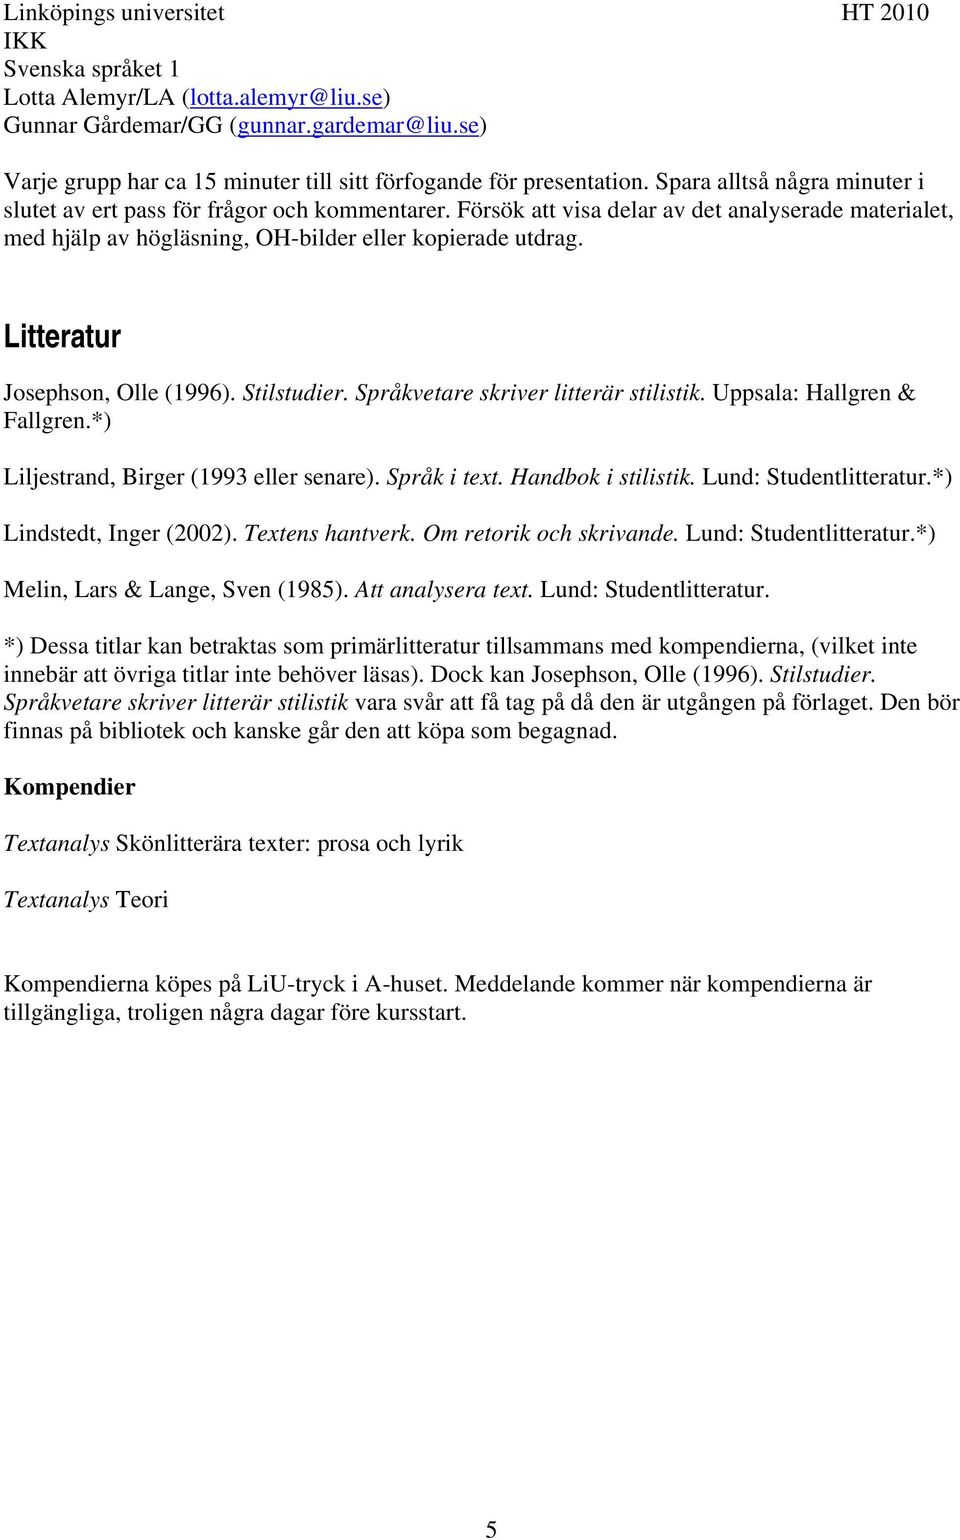 Litteratur Josephson, Olle (1996). Stilstudier. Språkvetare skriver litterär stilistik. Uppsala: Hallgren & Fallgren.*) Liljestrand, Birger (1993 eller senare). Språk i text. Handbok i stilistik.